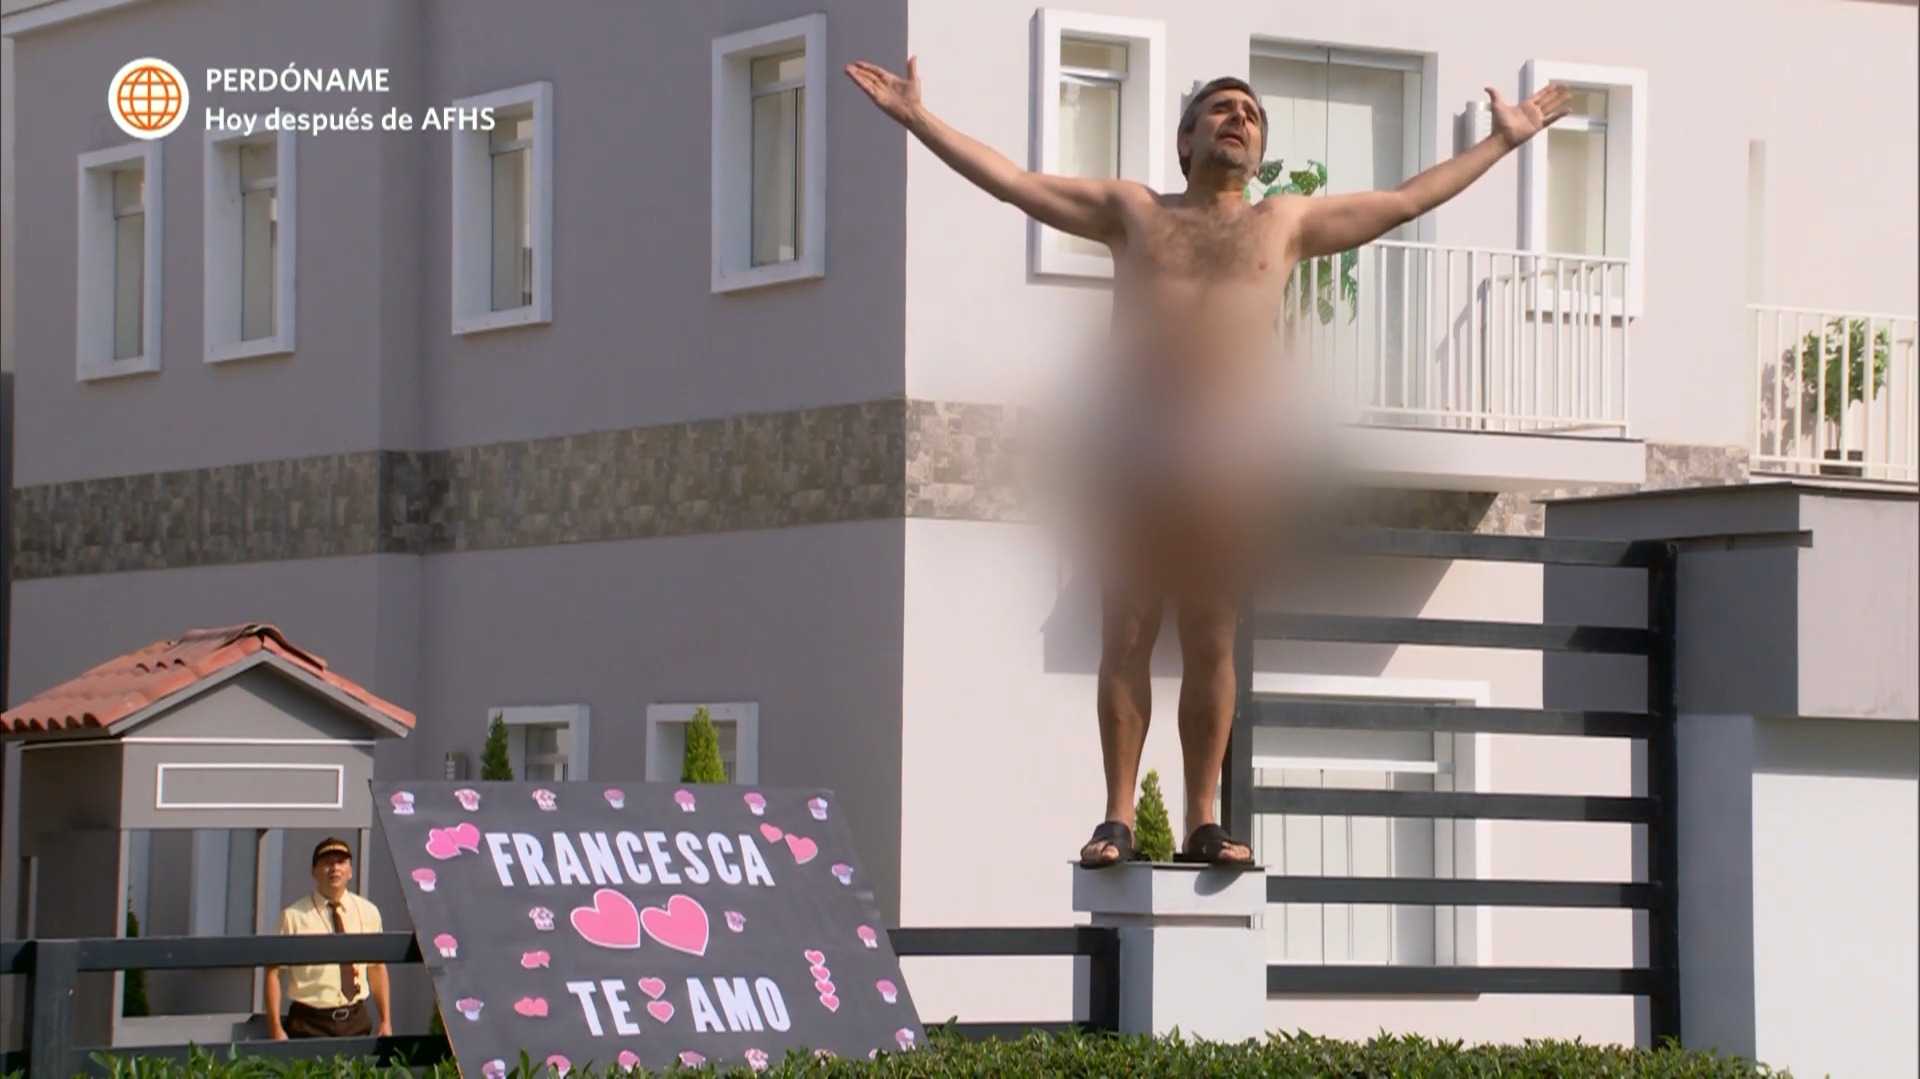 Diego se desnudó frente a Francesca y ella lo rechazó. Fuente: AméricaTV